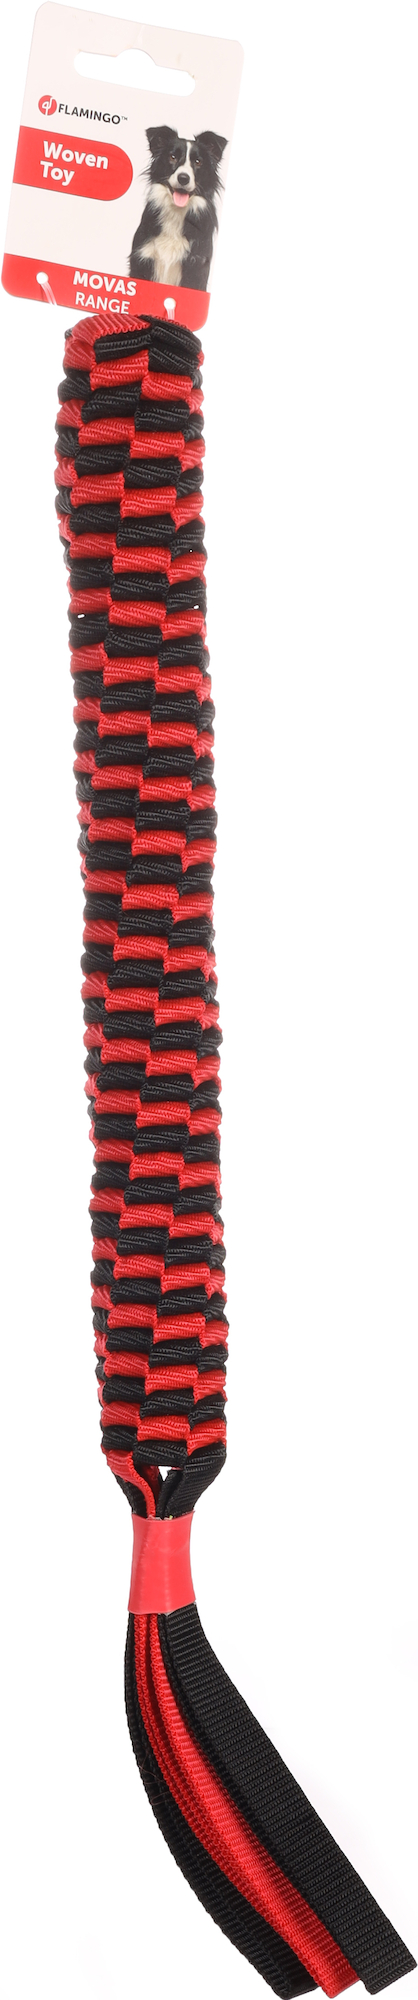 jouet chien - flamingo jouet movas bâton tissé rouge et noir - 50 x 3,7 cm